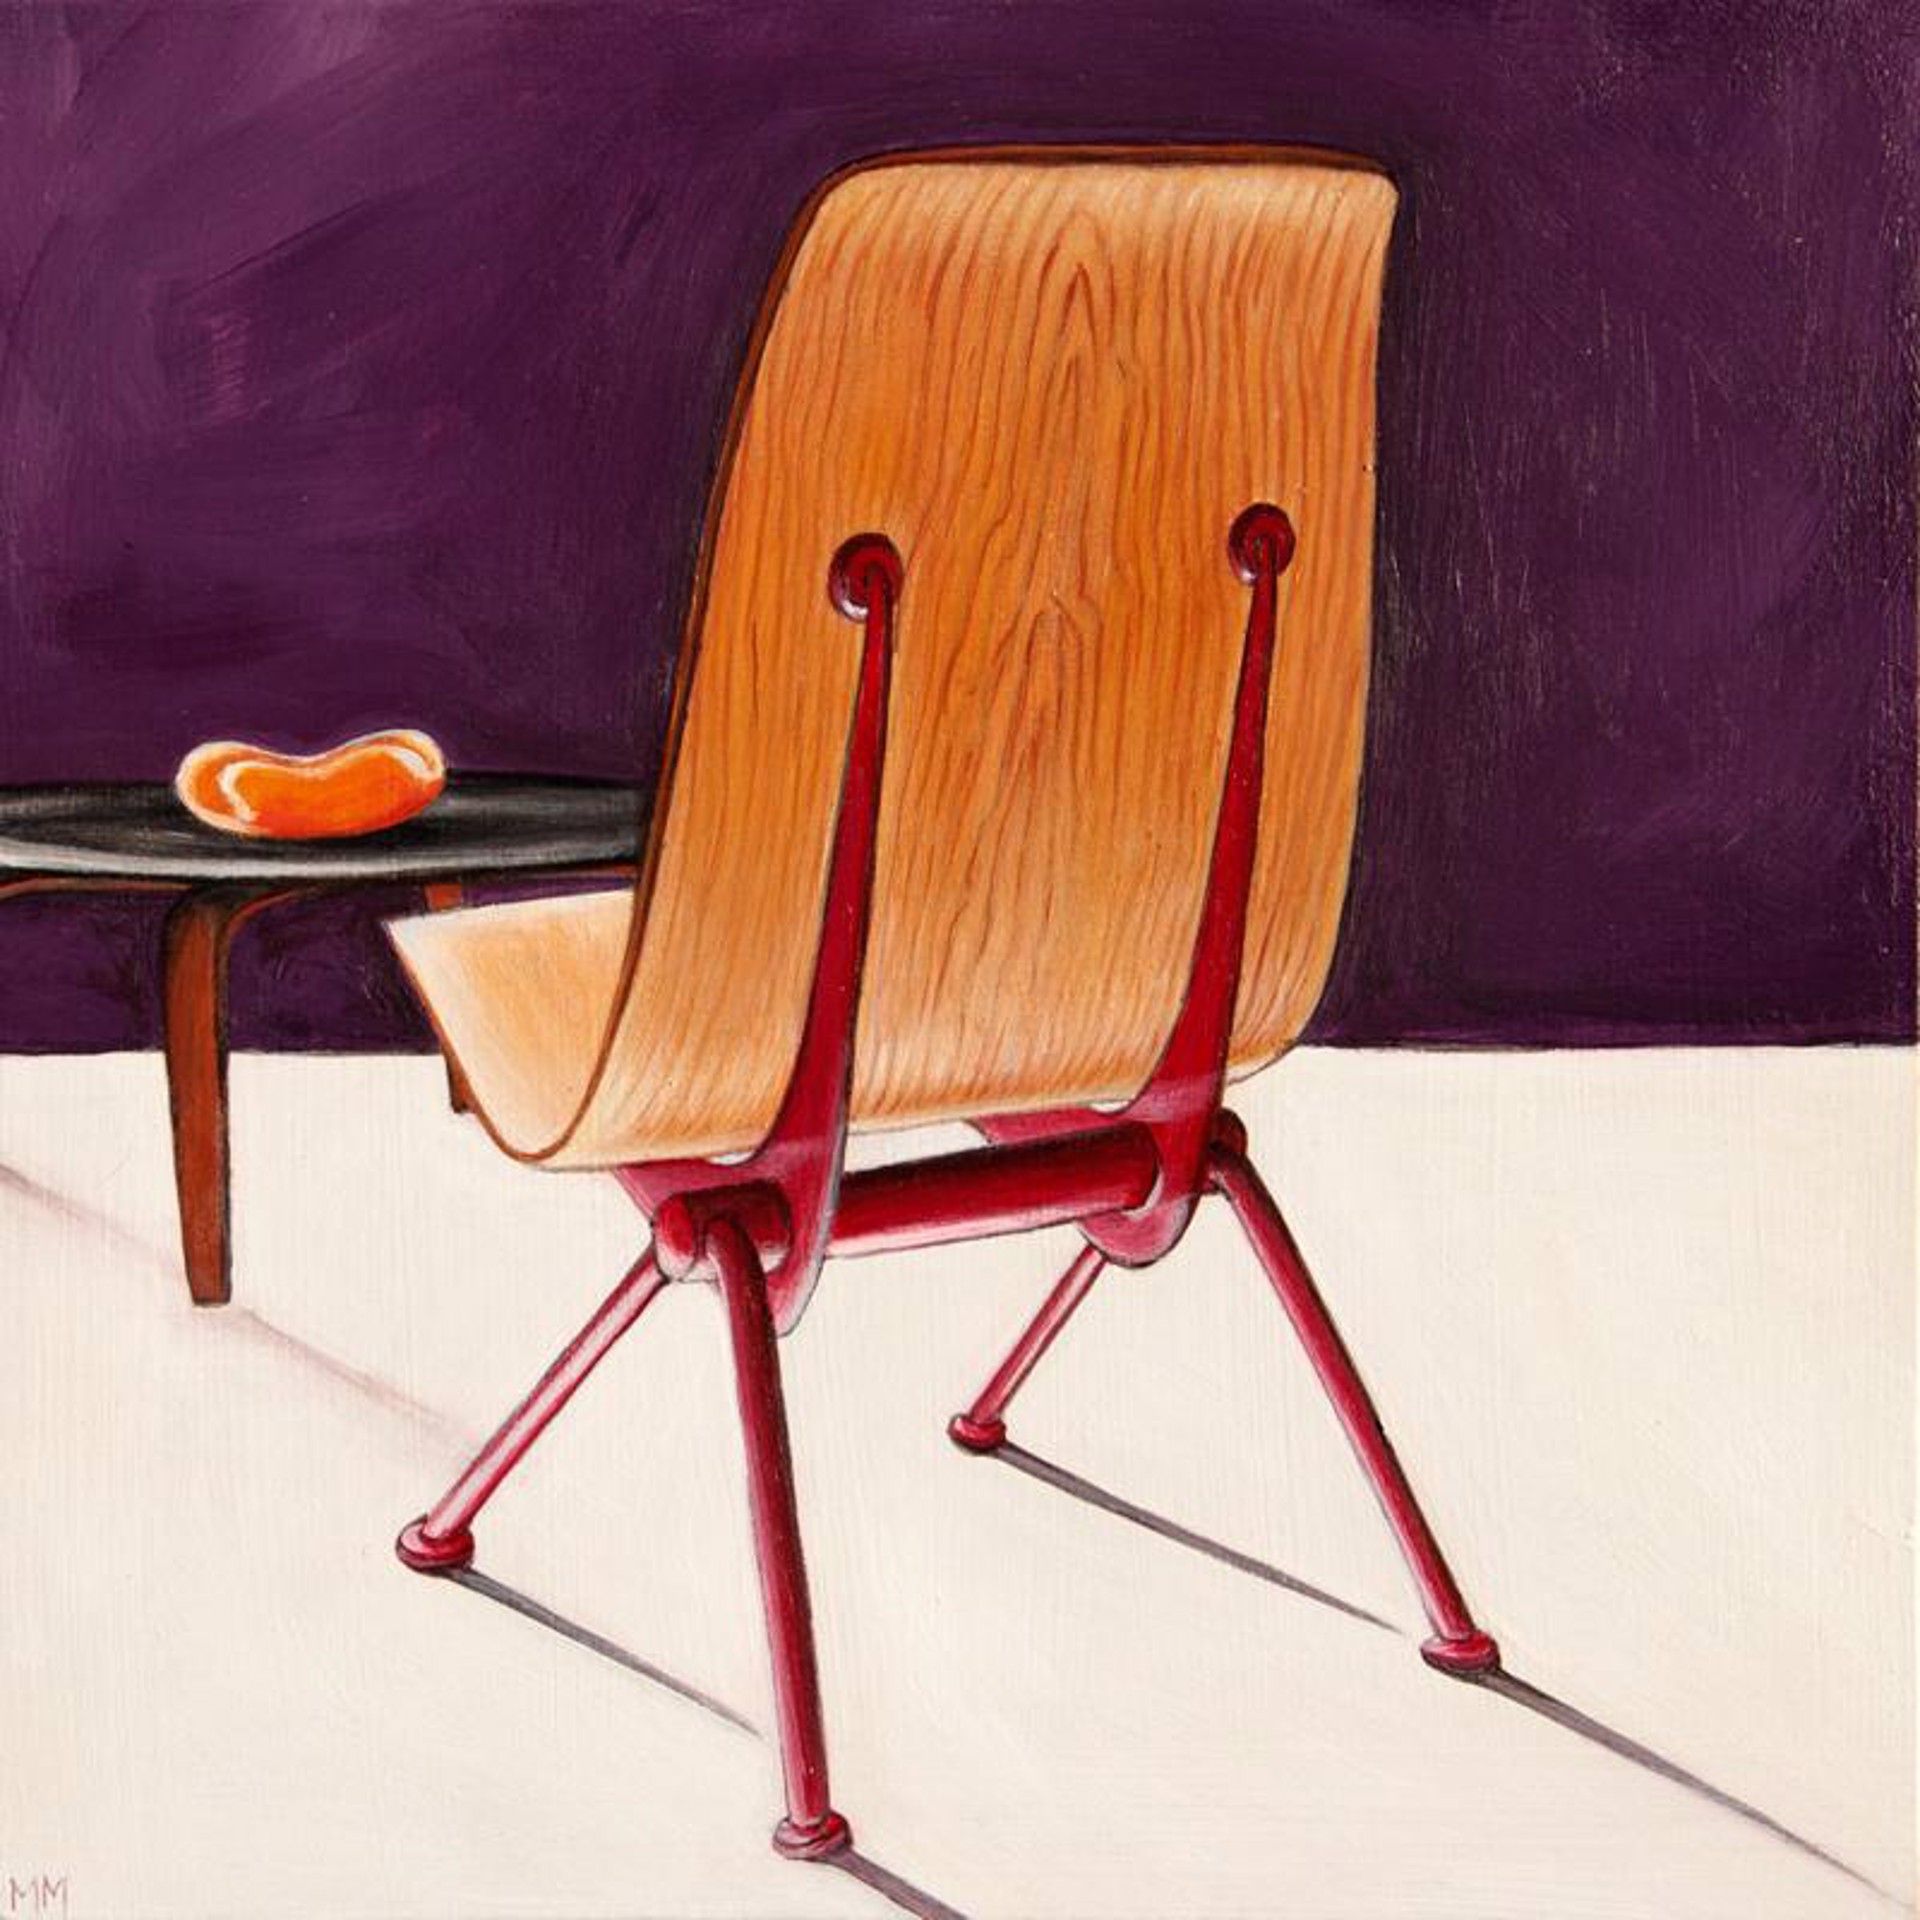 Antony Chair by Mara Minuzzo